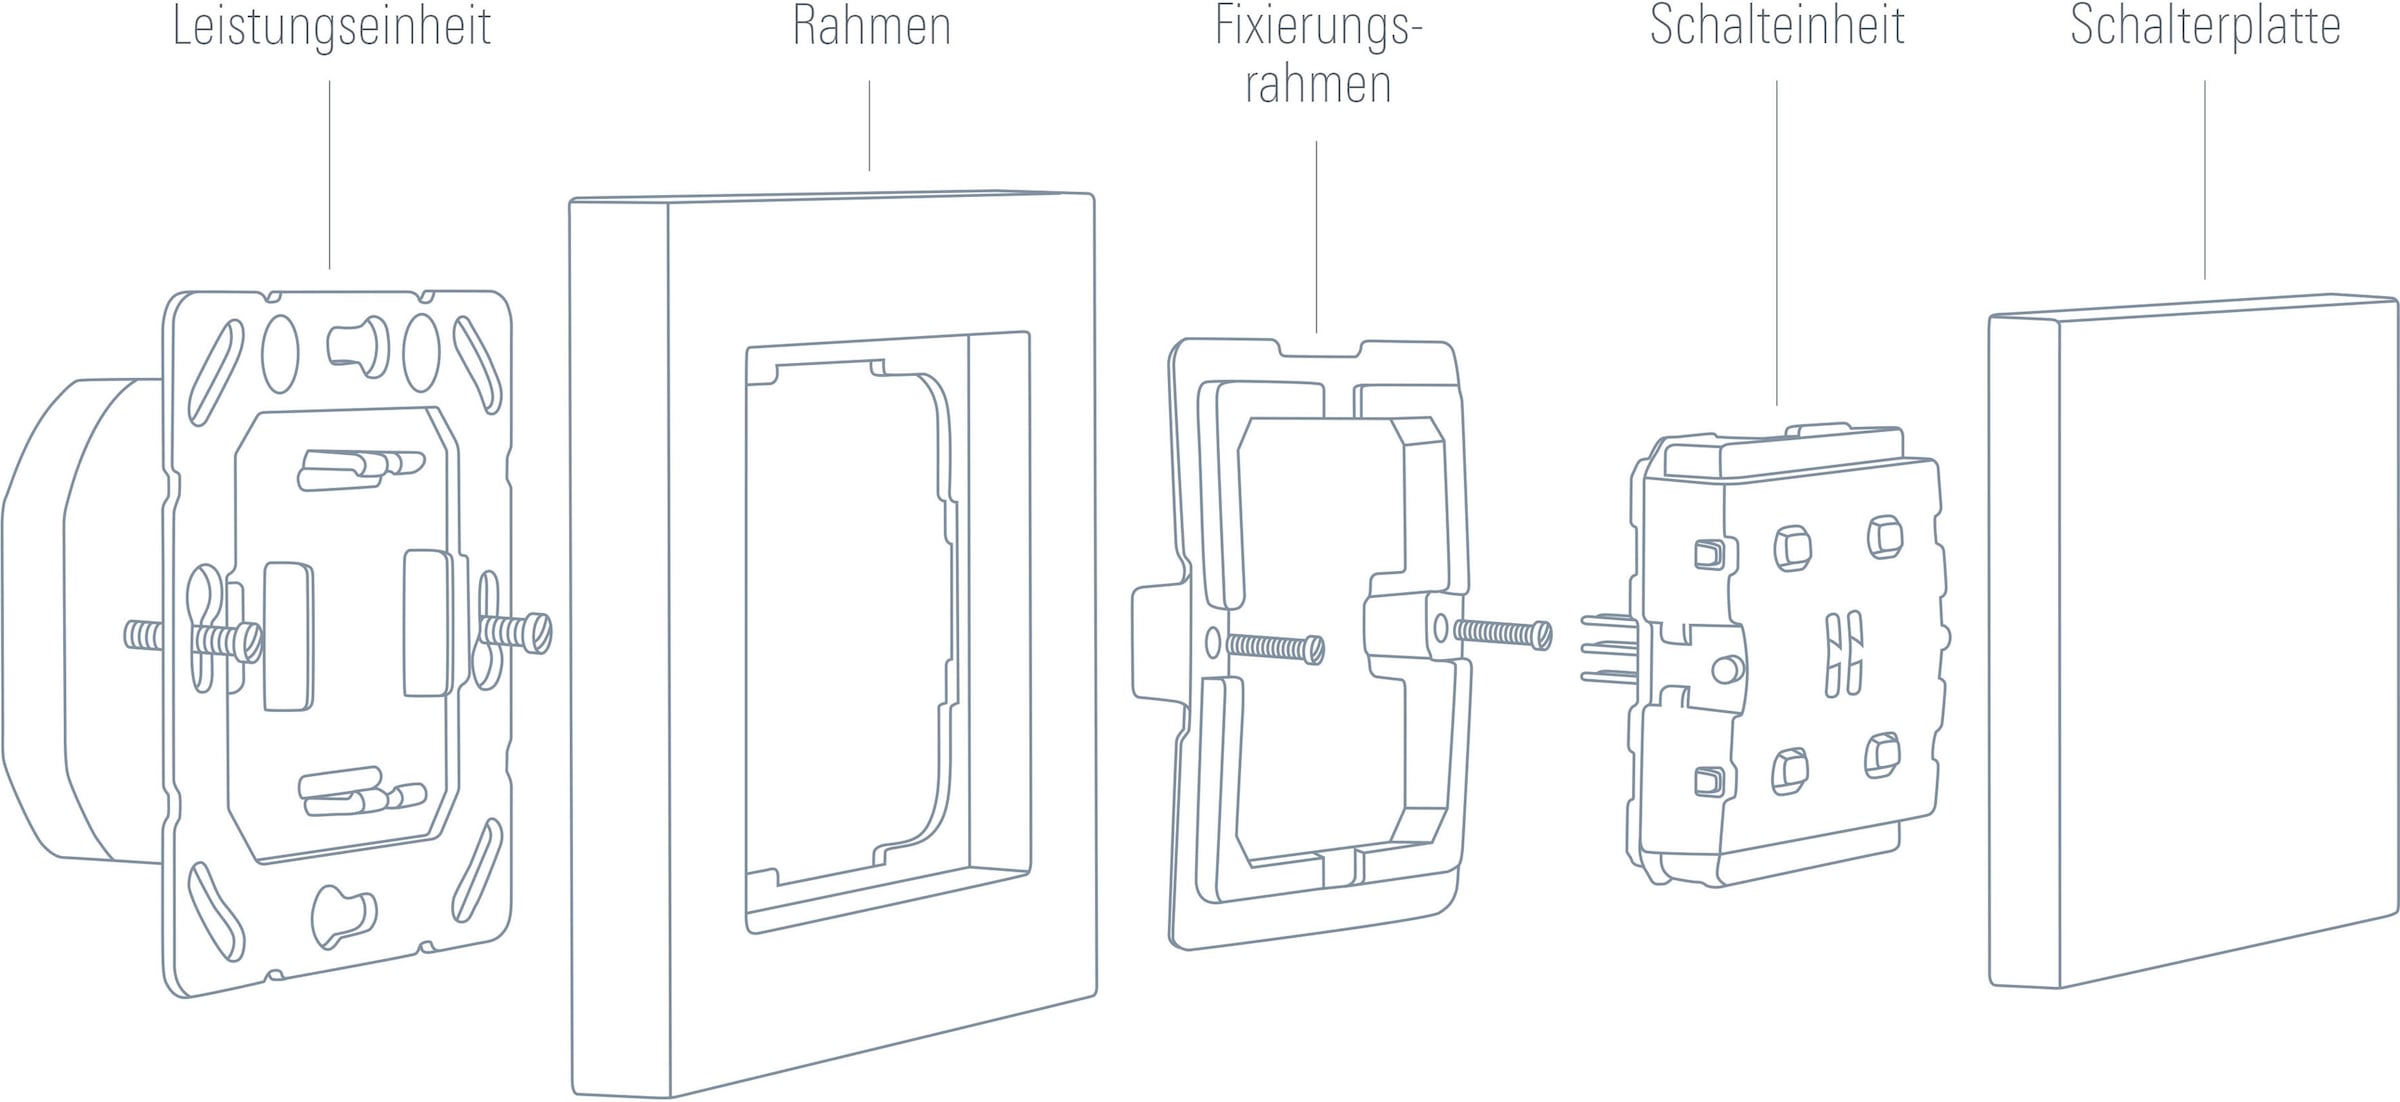 EVE Schalter »Light Switch (HomeKit)«